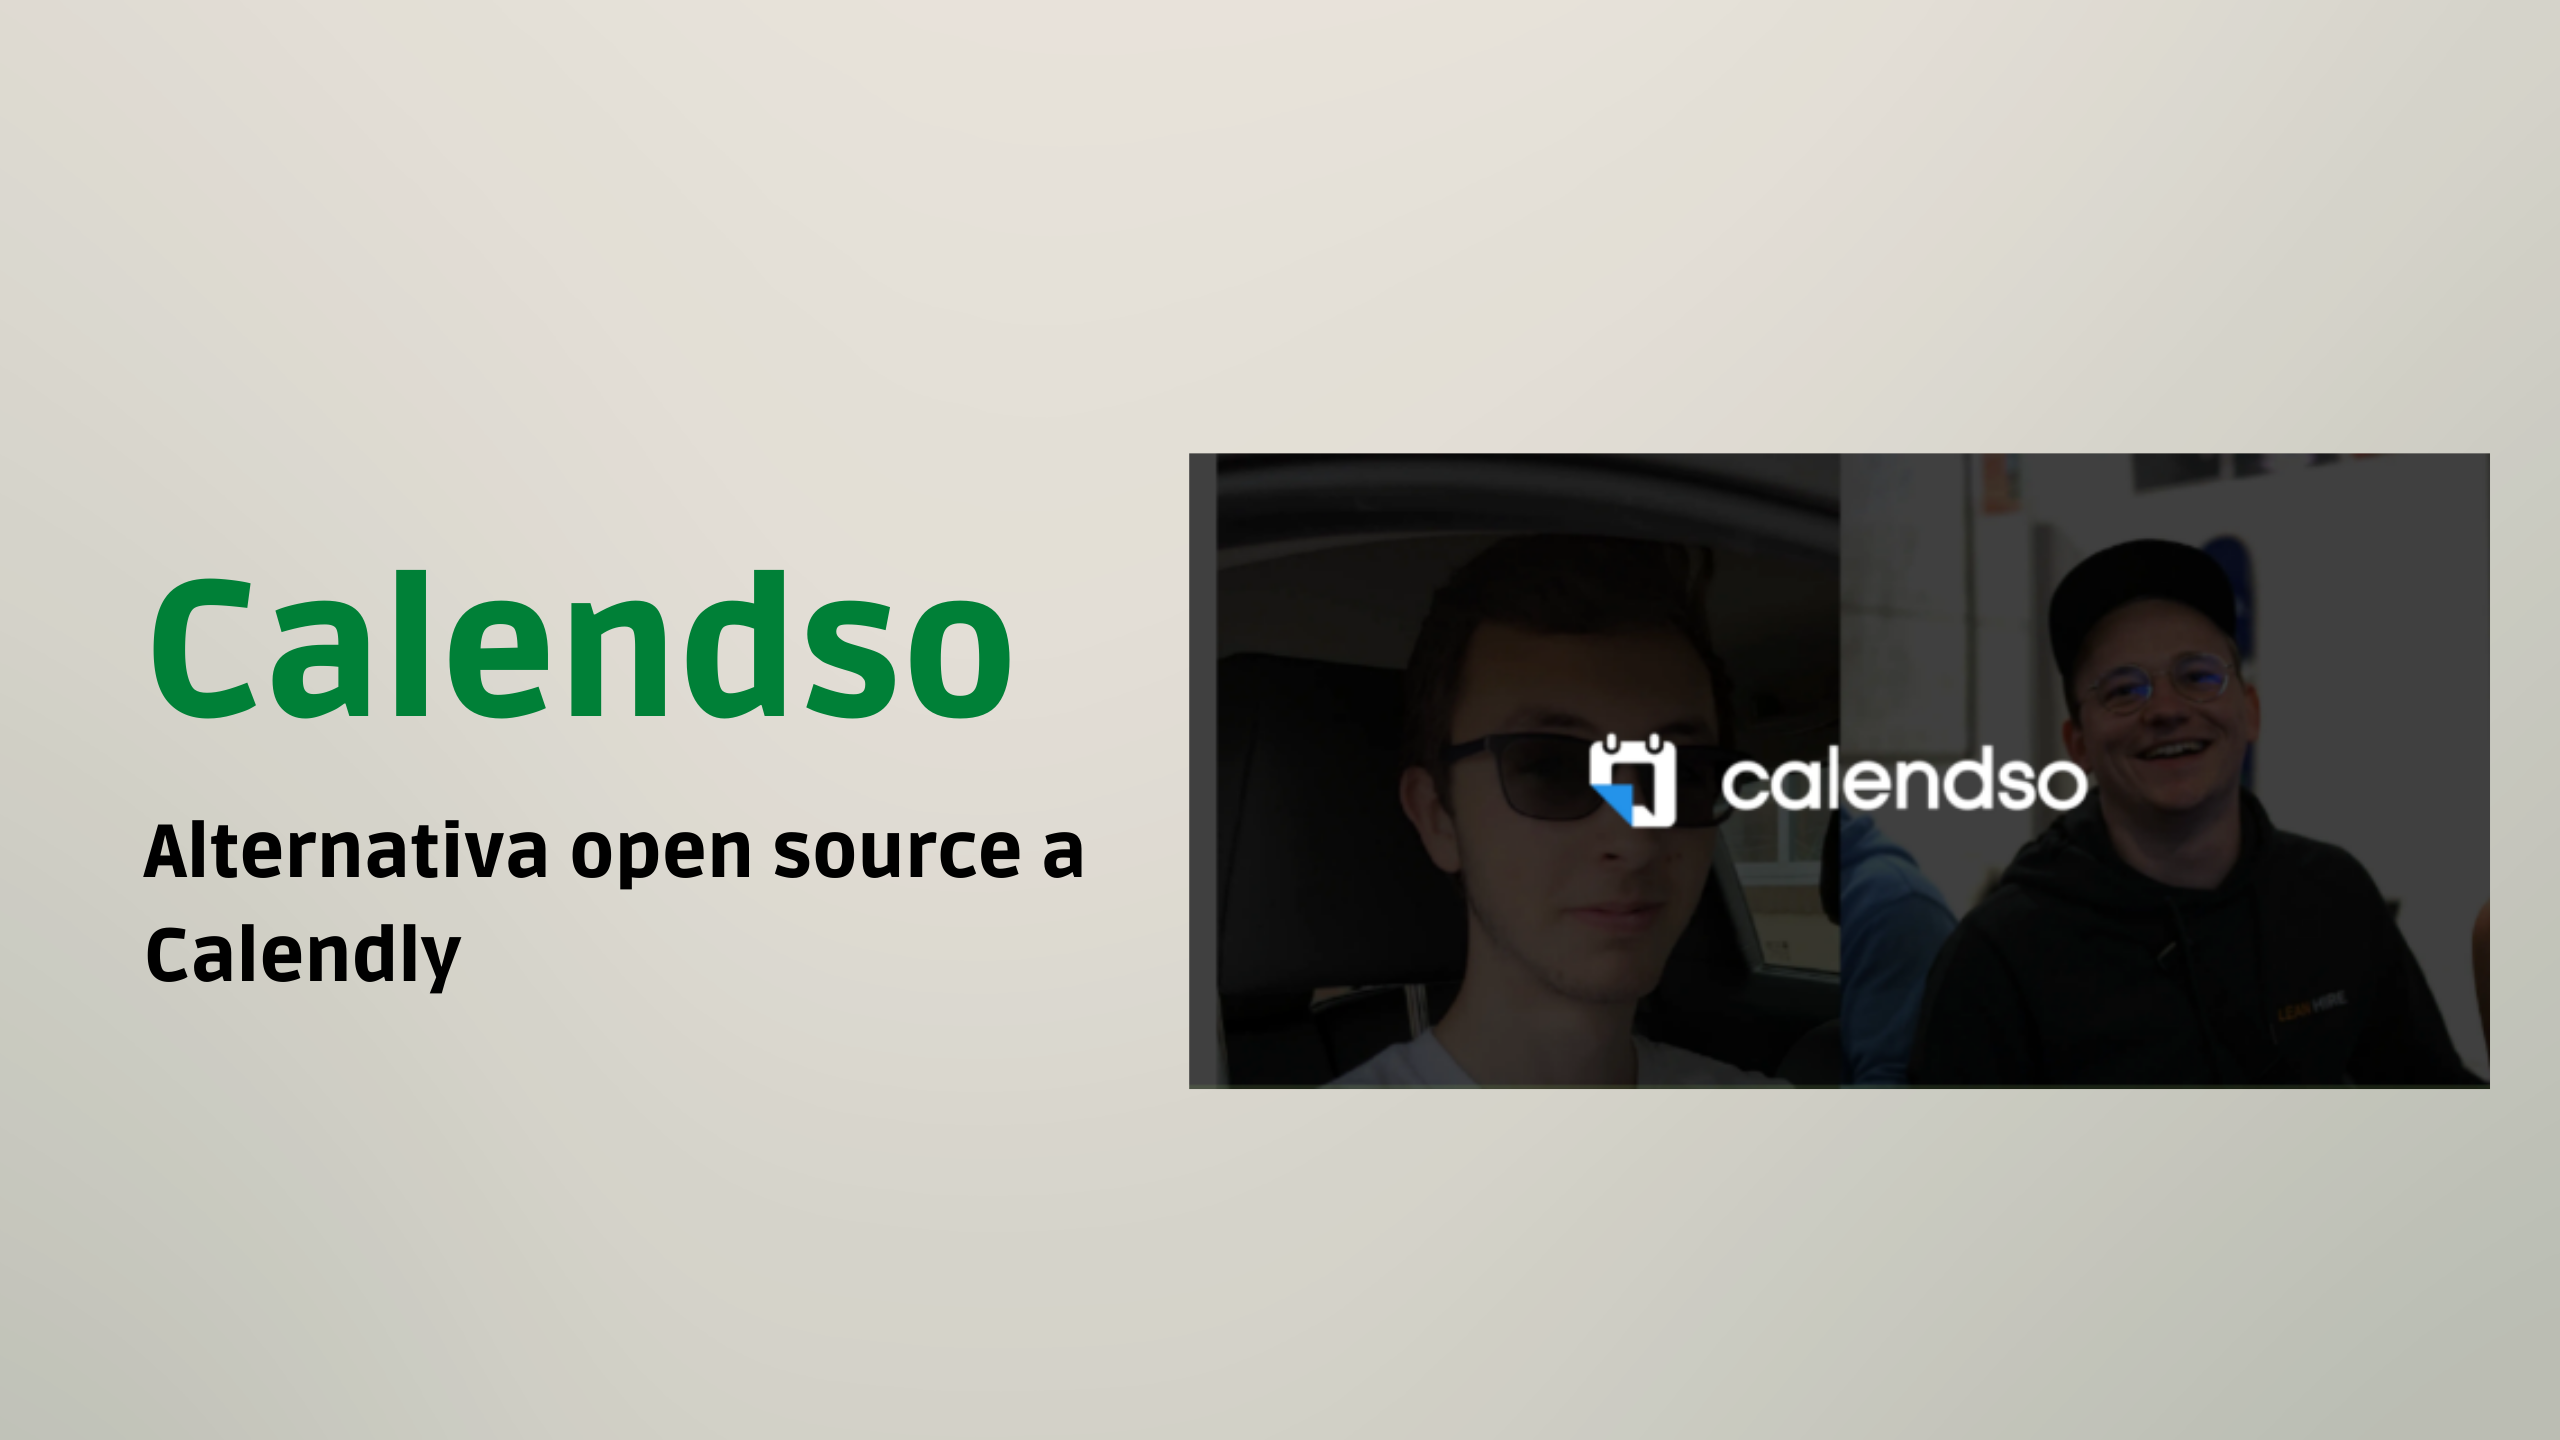 Calendso alternativa open source a Calendly